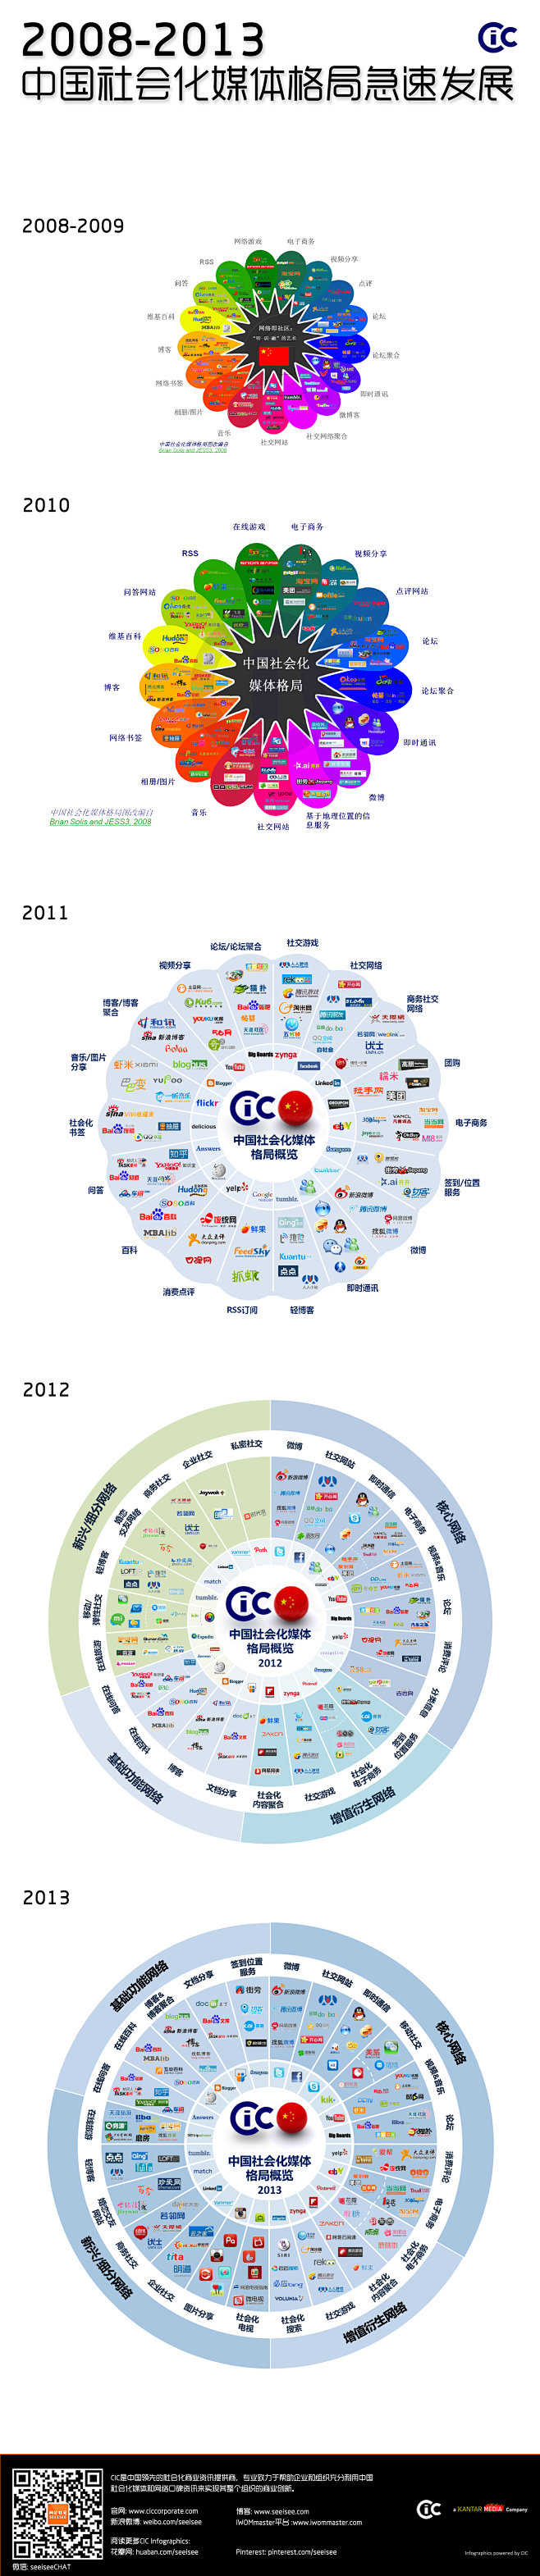 CIC 2008-2013 中国社会化媒...